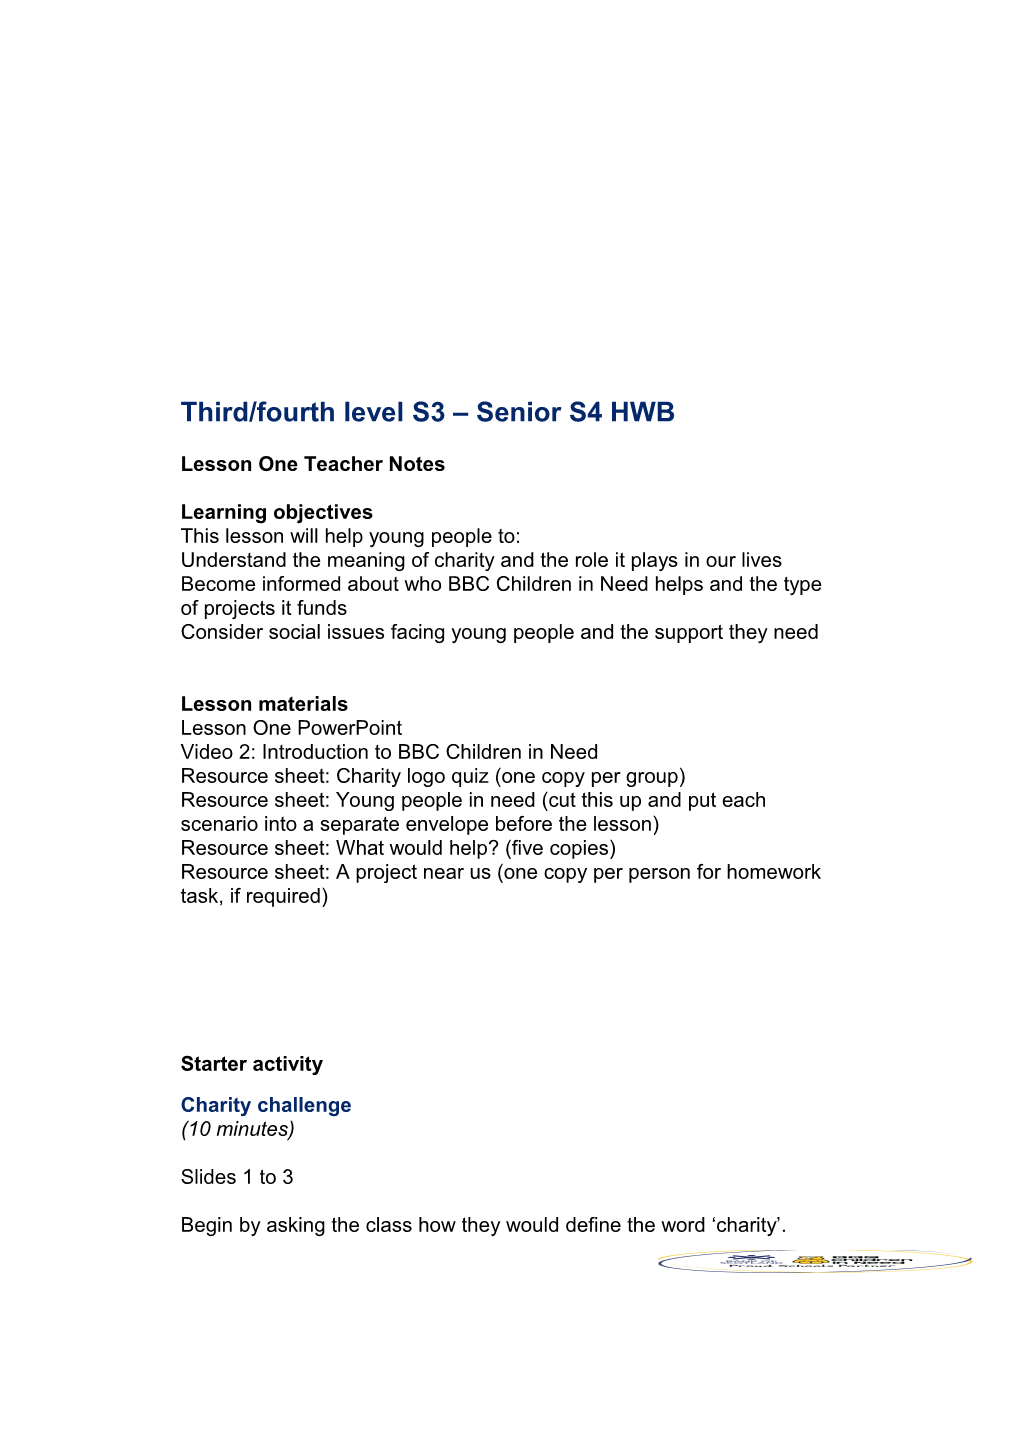 Third/Fourth Level S3 Senior S4 HWB